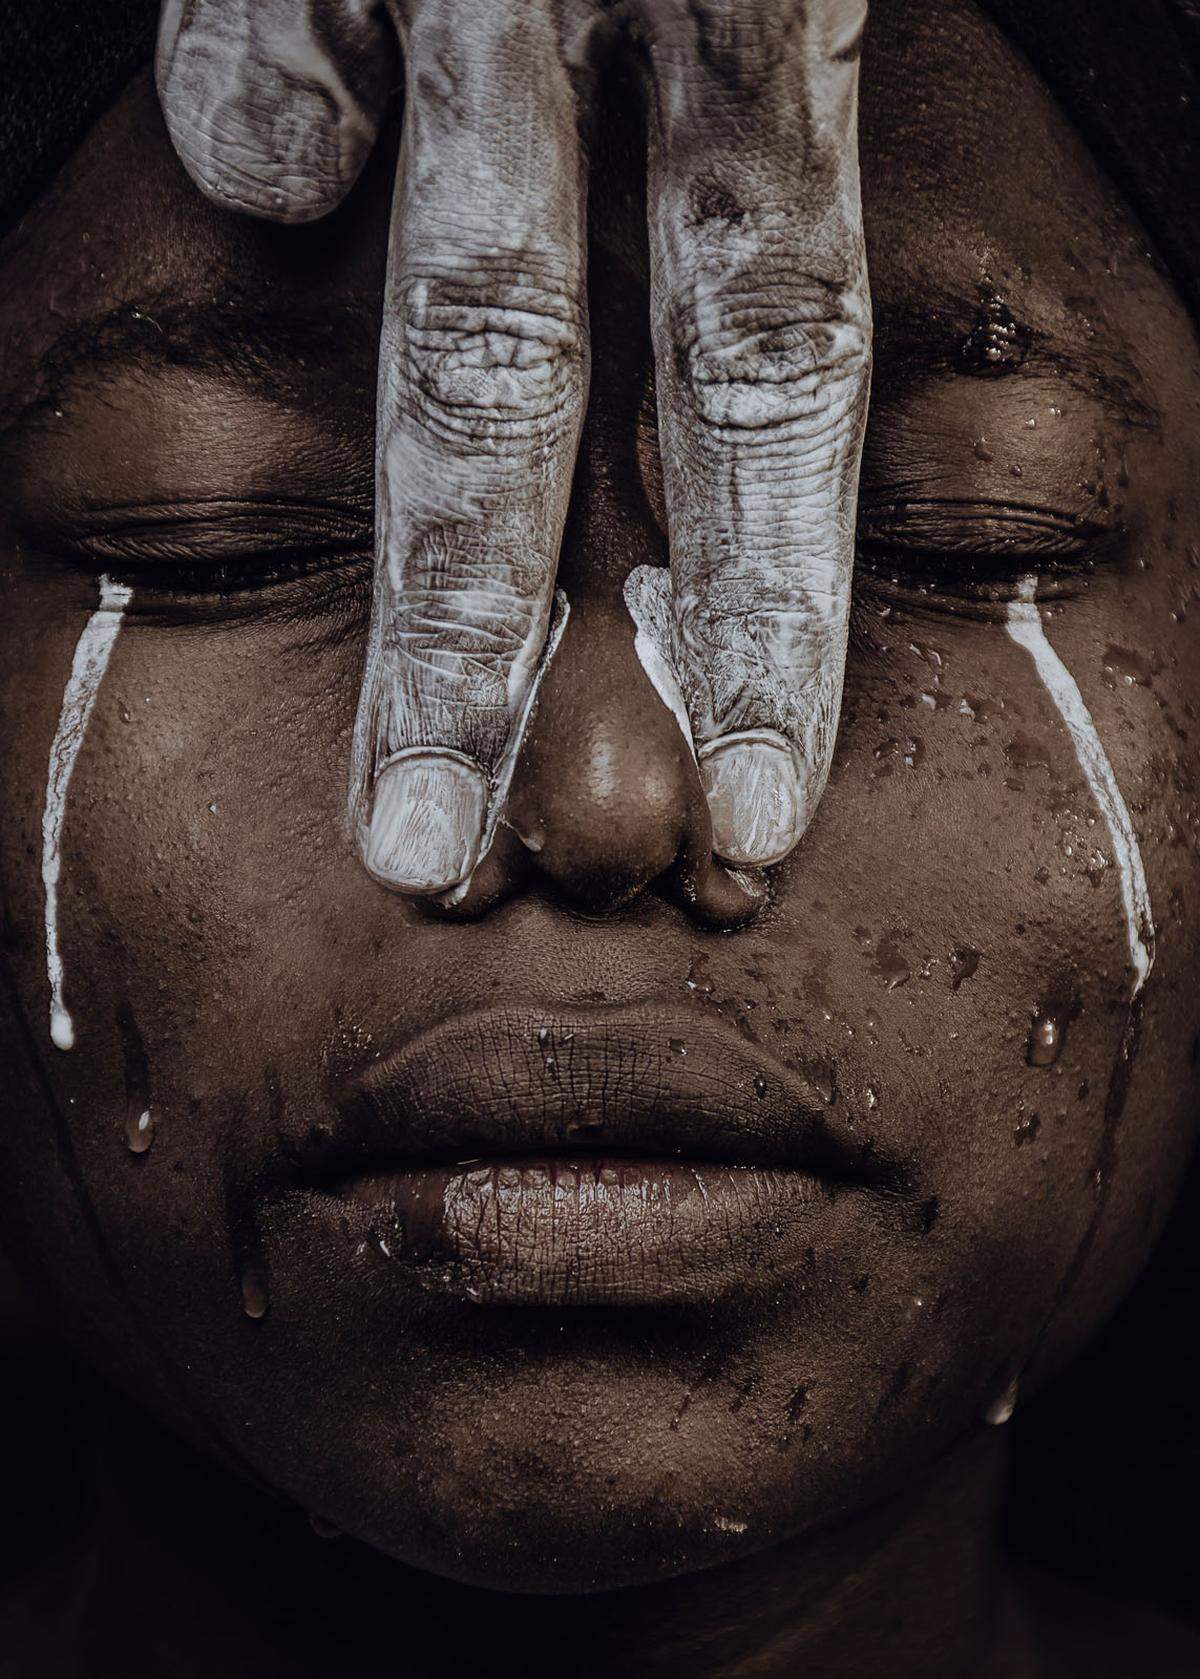 "I can't breathe" nennt der kenianische Fotograf Dennis Onyango sein Bild, das den jüngsten Fotowettbewerb der Plattform Agora gewonnen hat. "Ich kann nicht atmen", waren die letzten Worte des Afroamerikaners George Floyd vor seinem Tod. Der gewaltsame Vorfall hat auf der ganzen Welt eine Welle des Protests ausgelöst. Und hat die Betreiber von Agora dazu bewegt, ein Projekt ins Leben zu rufen. Unter dem Schlagwort #StopRacism sollten Nutzer Bilder einreichen, die diesen Inhalt am besten widerspiegelten.